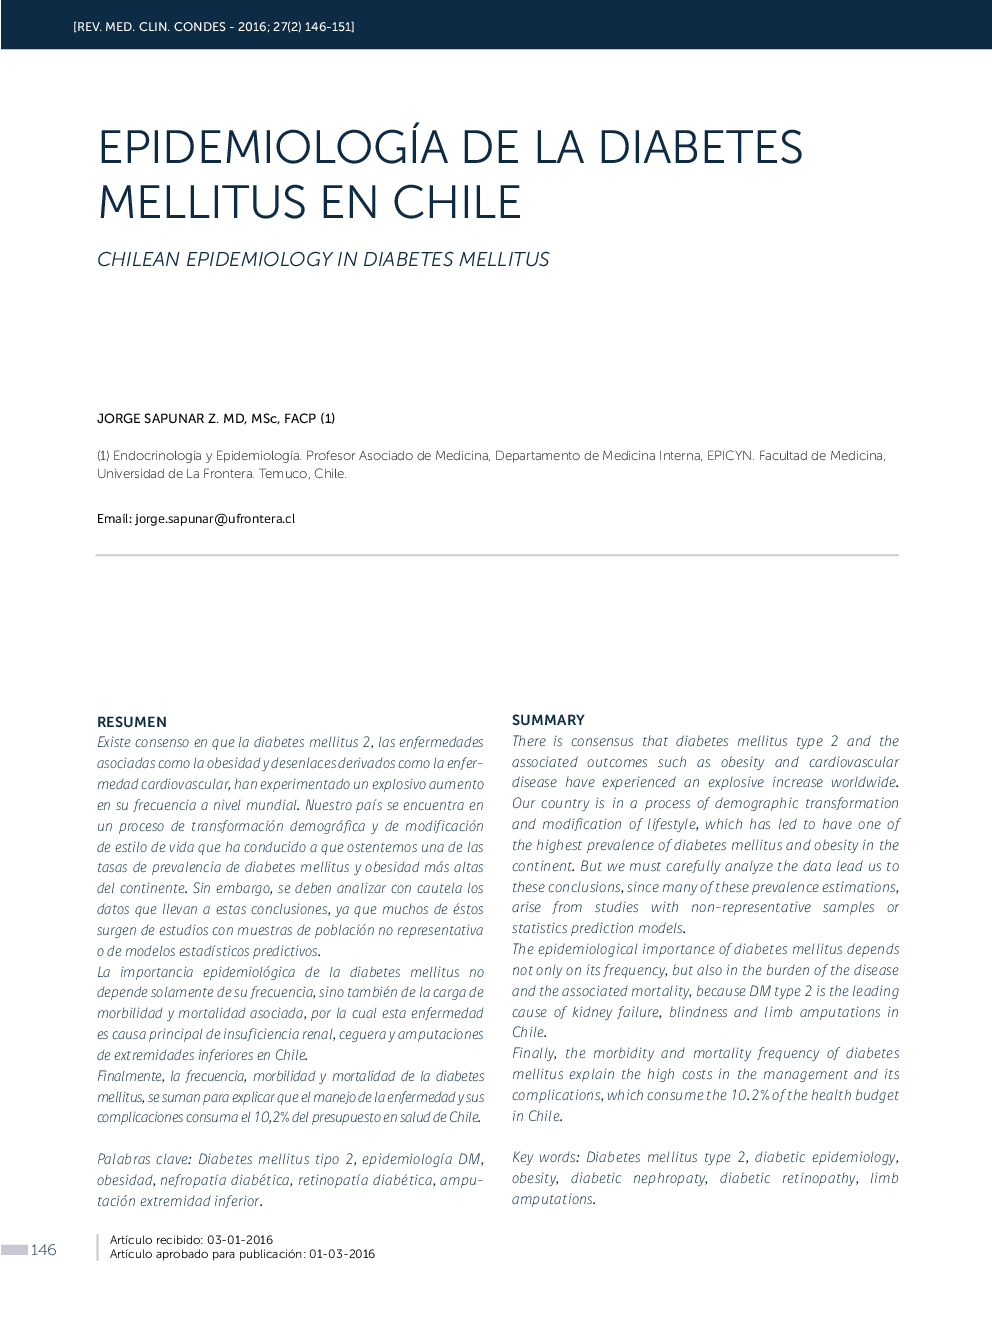 EPIDEMIOLOGÍA DE LA DIABETES MELLITUS EN CHILE